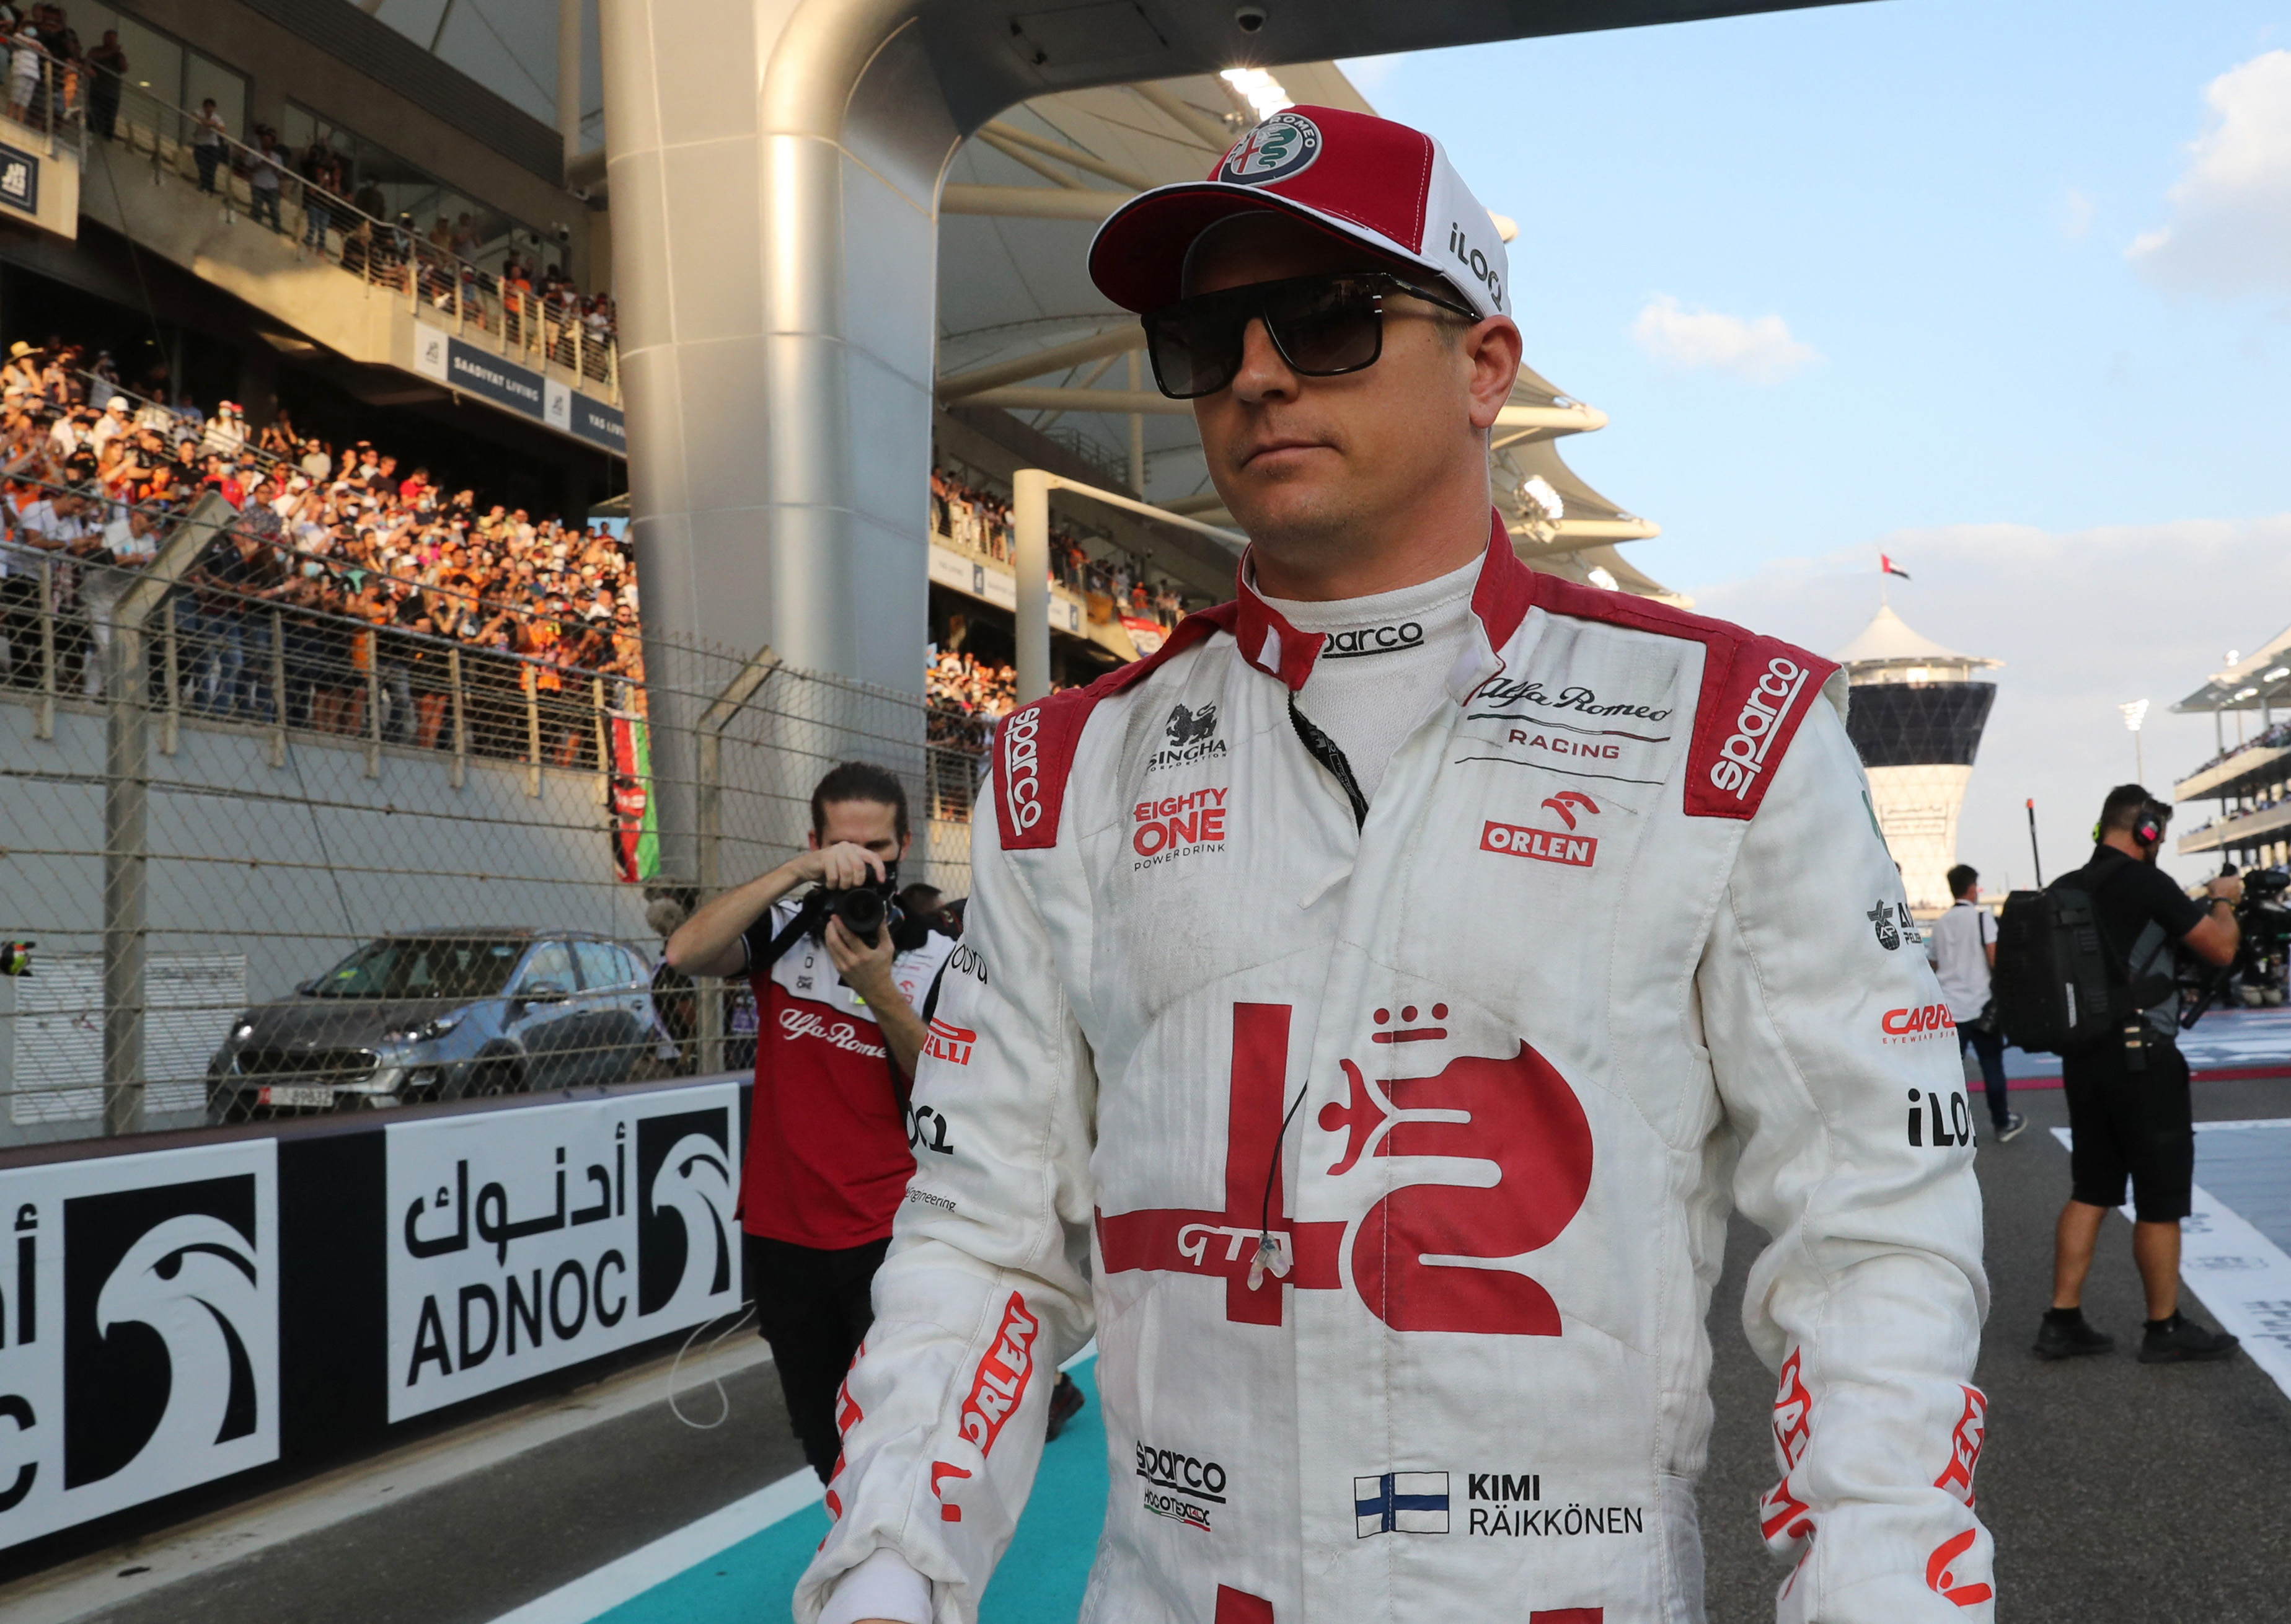 Kimi Raikkonen tuvo su estreno en la Fórmula 1 en 2001 y fue campeón con Ferrari en el 2007 (Foto: Reuters)